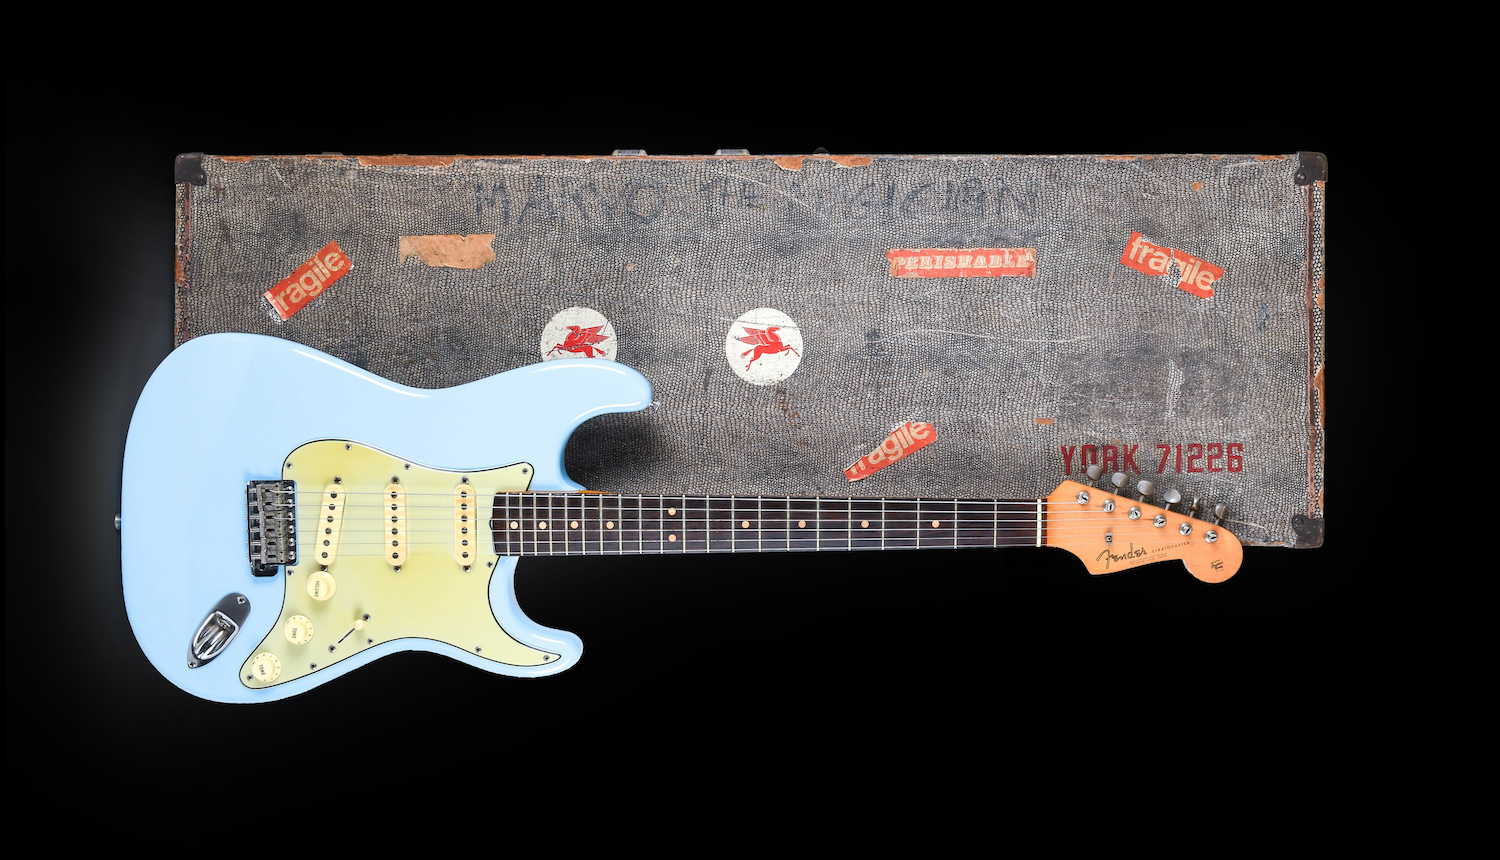 A pre-CBS Fender Stratocaster electric guitar